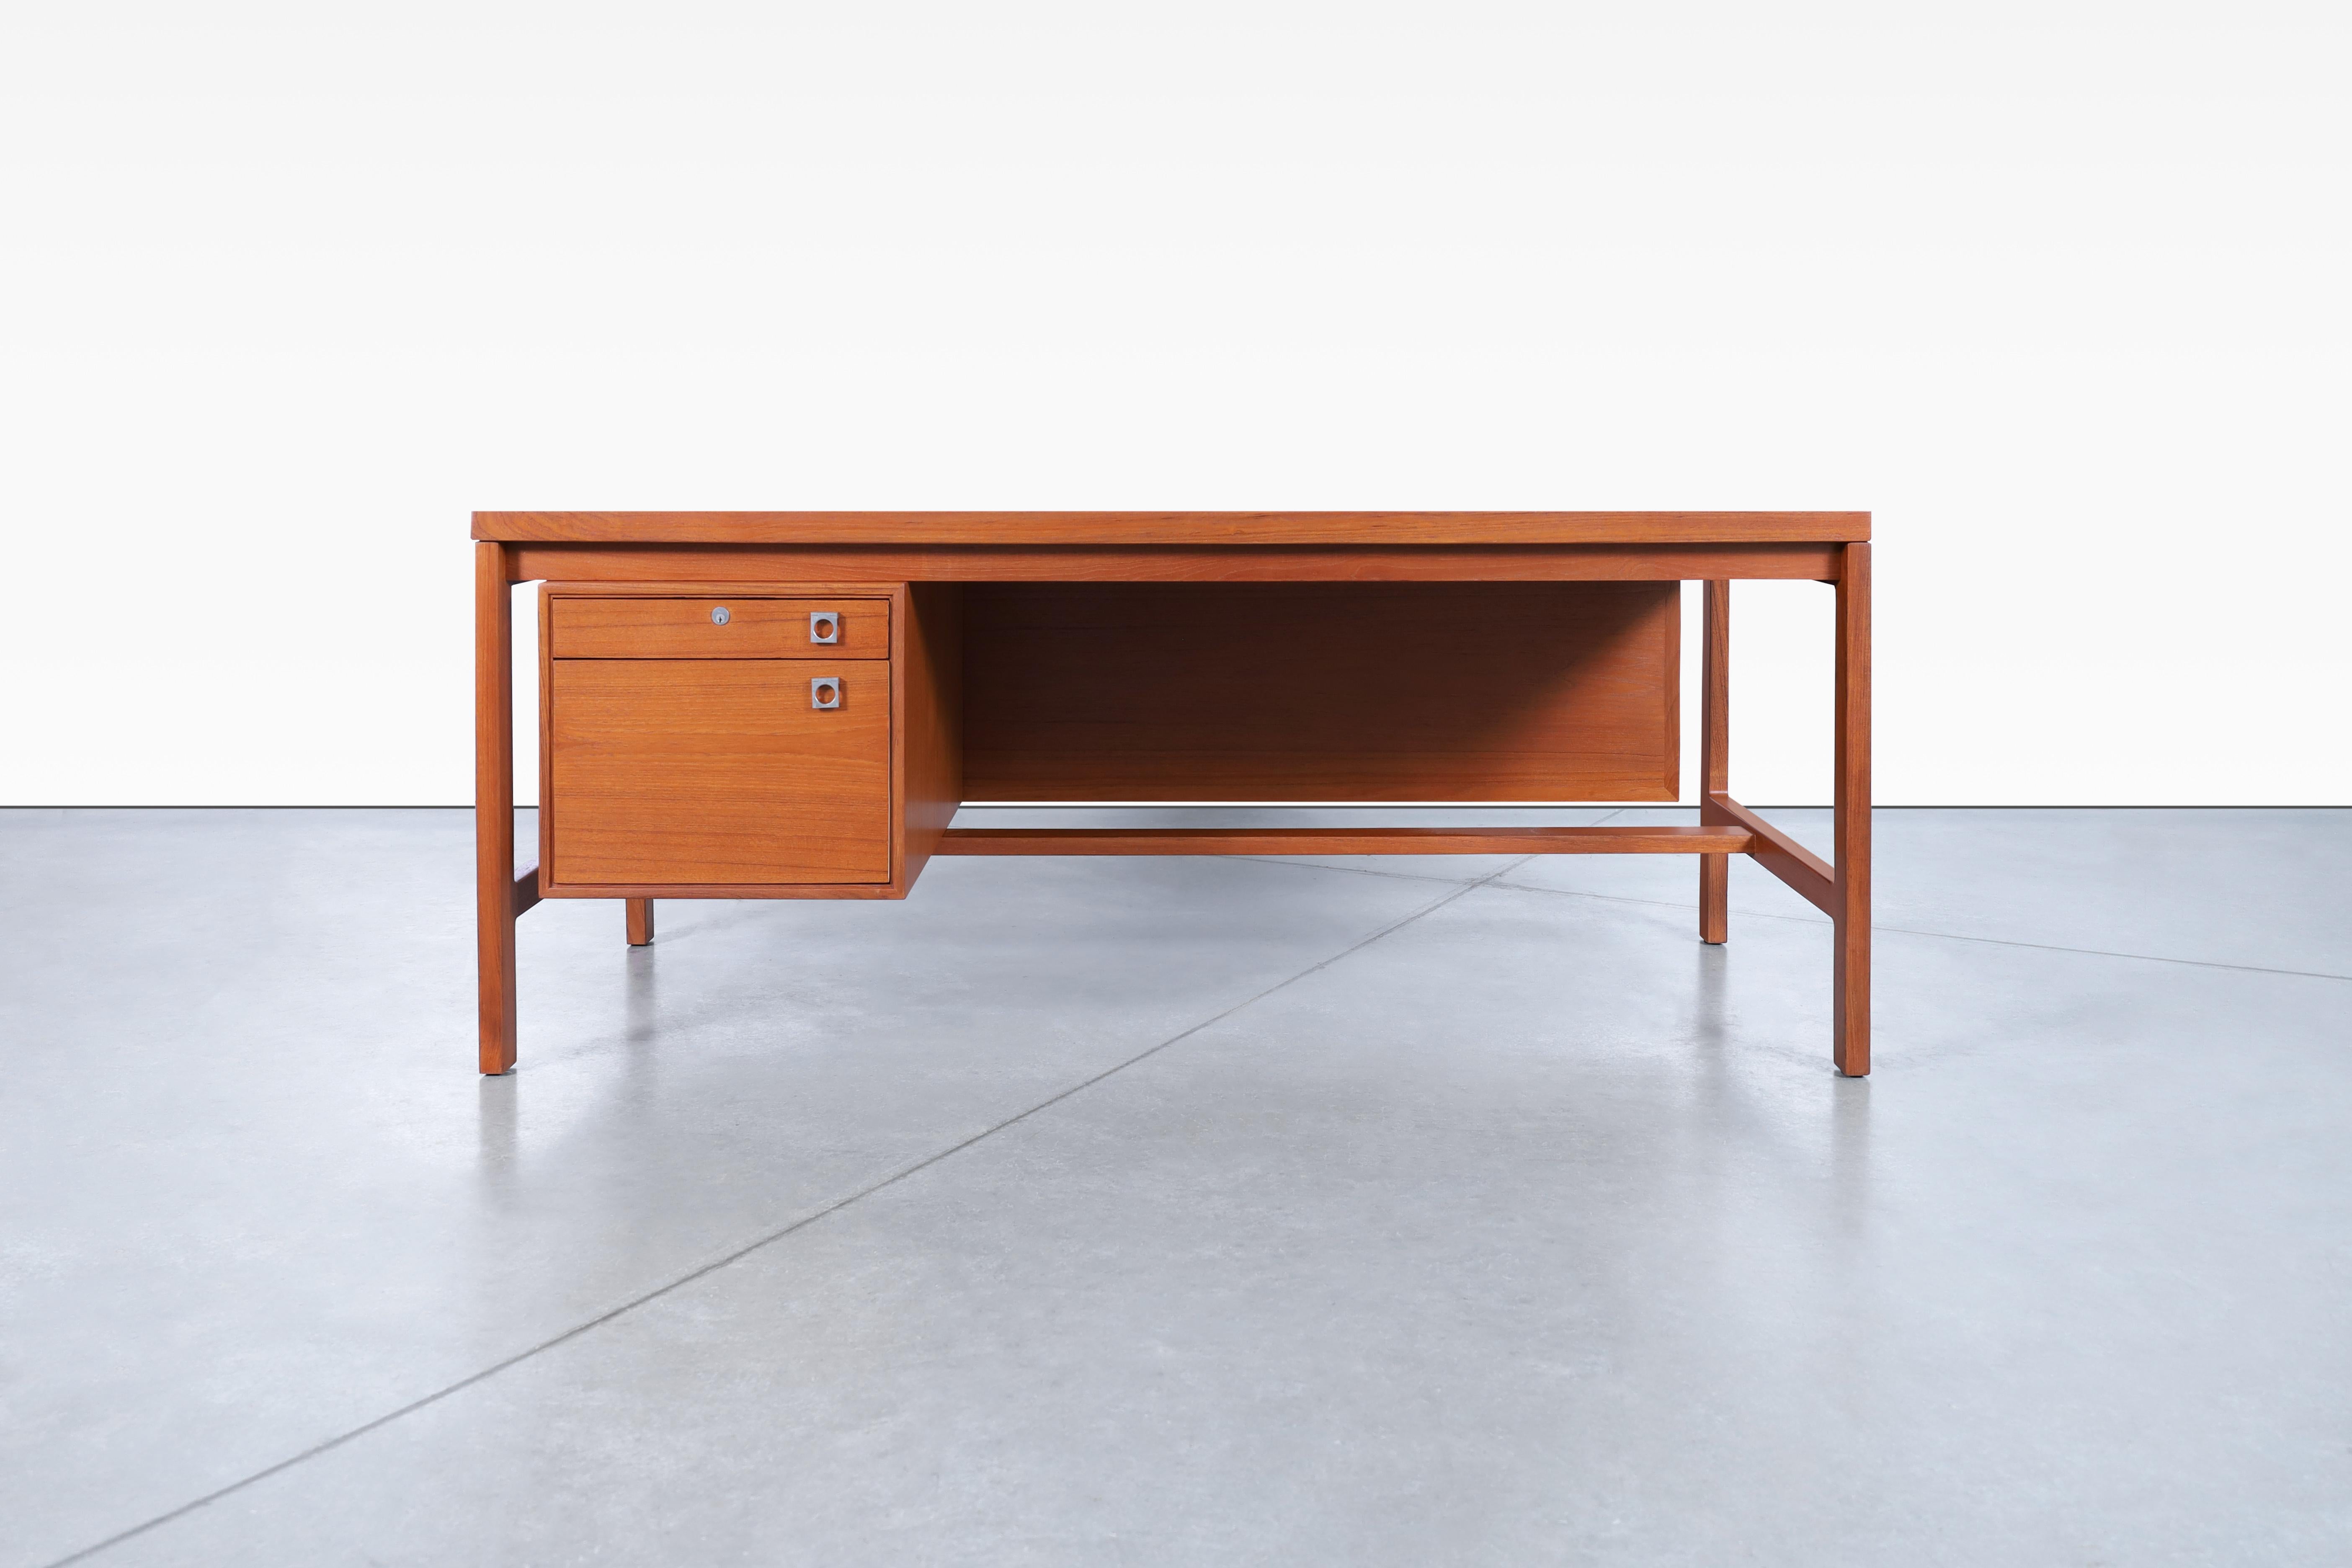 Atemberaubender moderner dänischer Schreibtisch aus Teakholz, entworfen von Arne Vodder für H.P Hansen in Dänemark, ca. 1960er Jahre. Dieser rechteckige Schreibtisch zeigt wunderschöne Details, die sehr gut ausgeführt sind. Ausgestattet mit einer